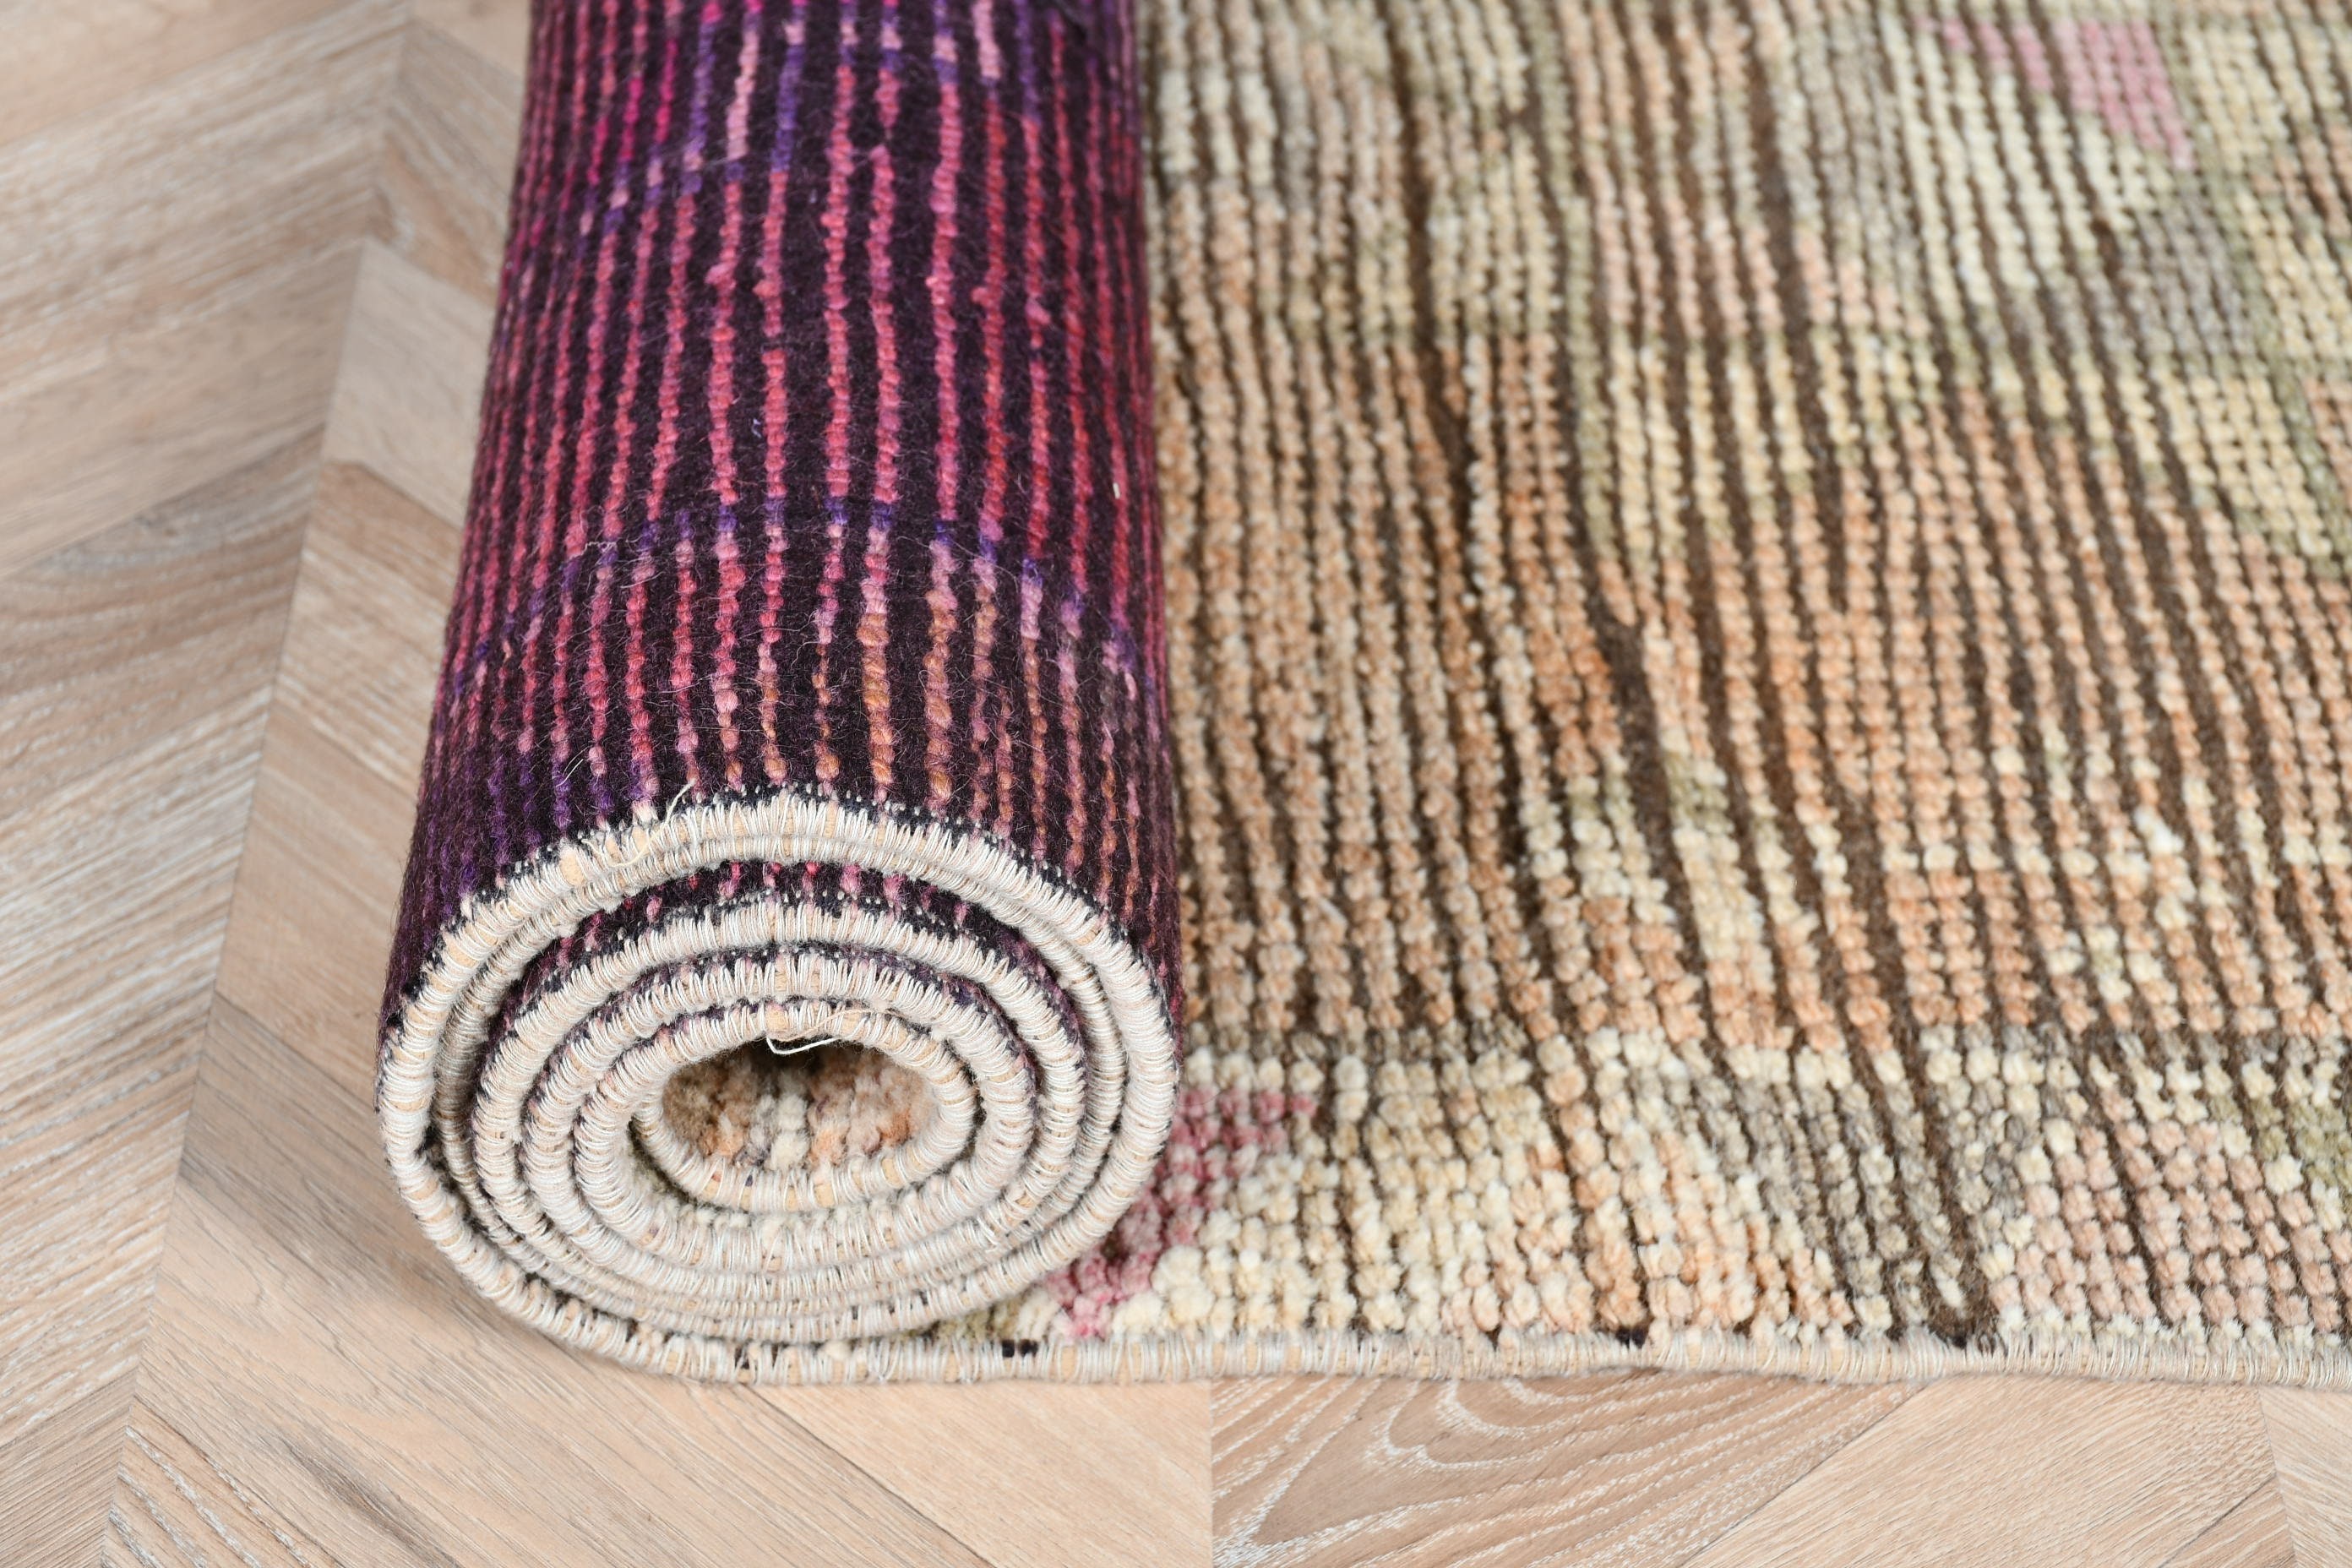 Handwoven Rugs, Stair Rug, Vintage Rug, Kitchen Rug, Rugs for Runner, Cool Rug, Pink Bedroom Rugs, Turkish Rug, 2.6x11.3 ft Runner Rug